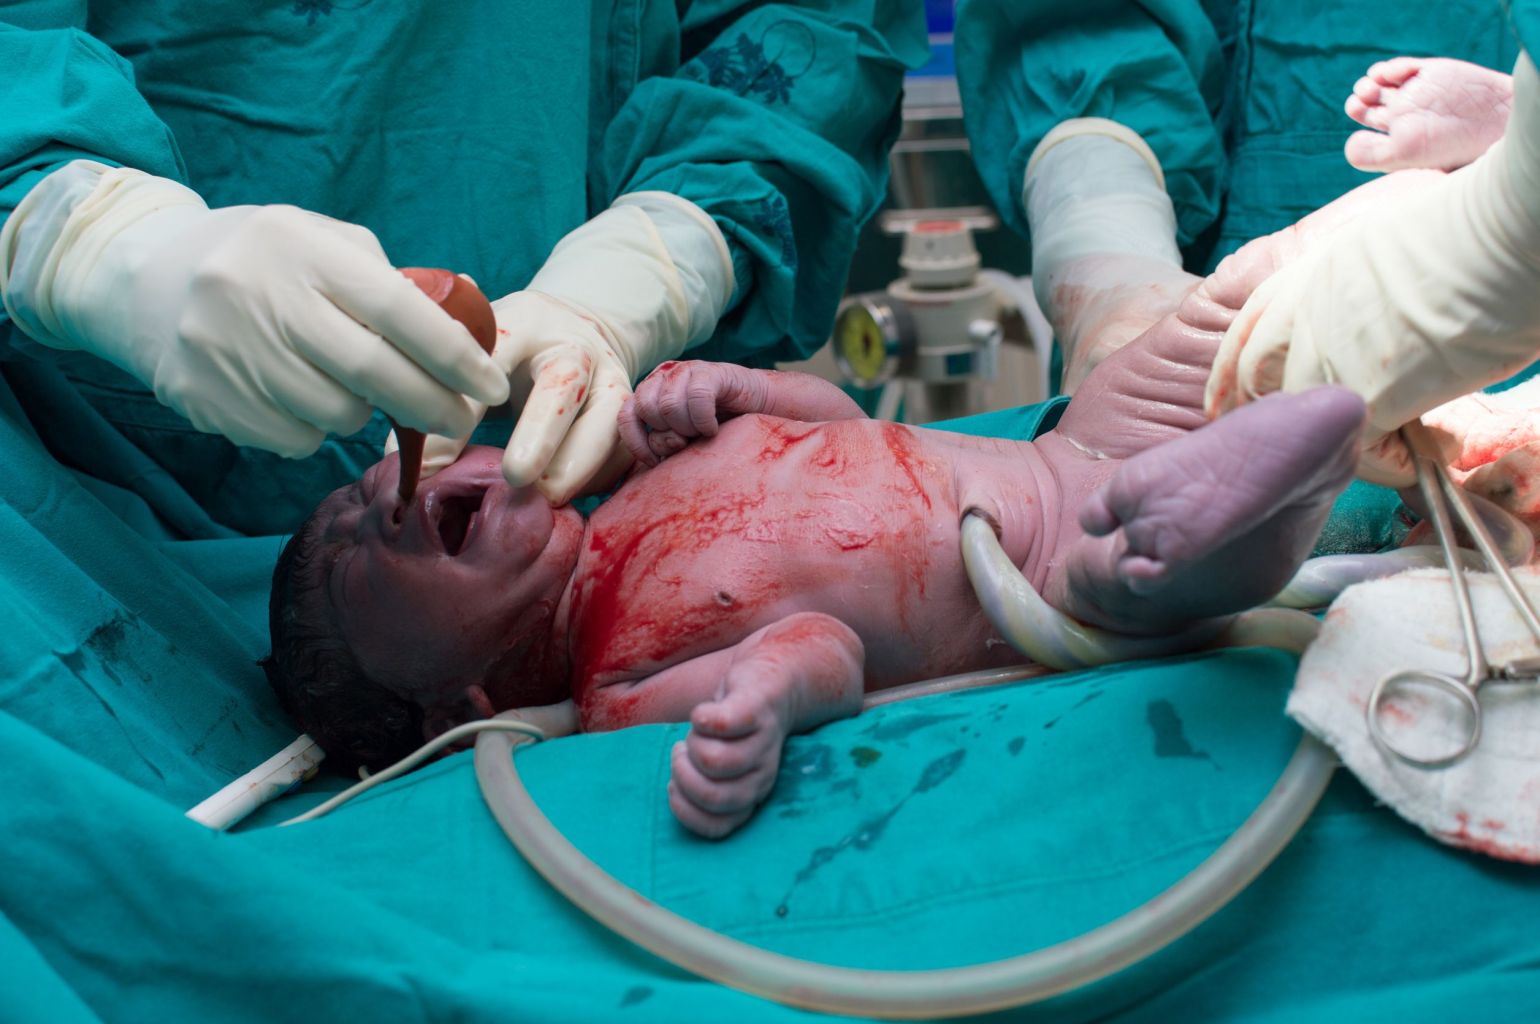 תינוק נולד בניתוח קיסרי